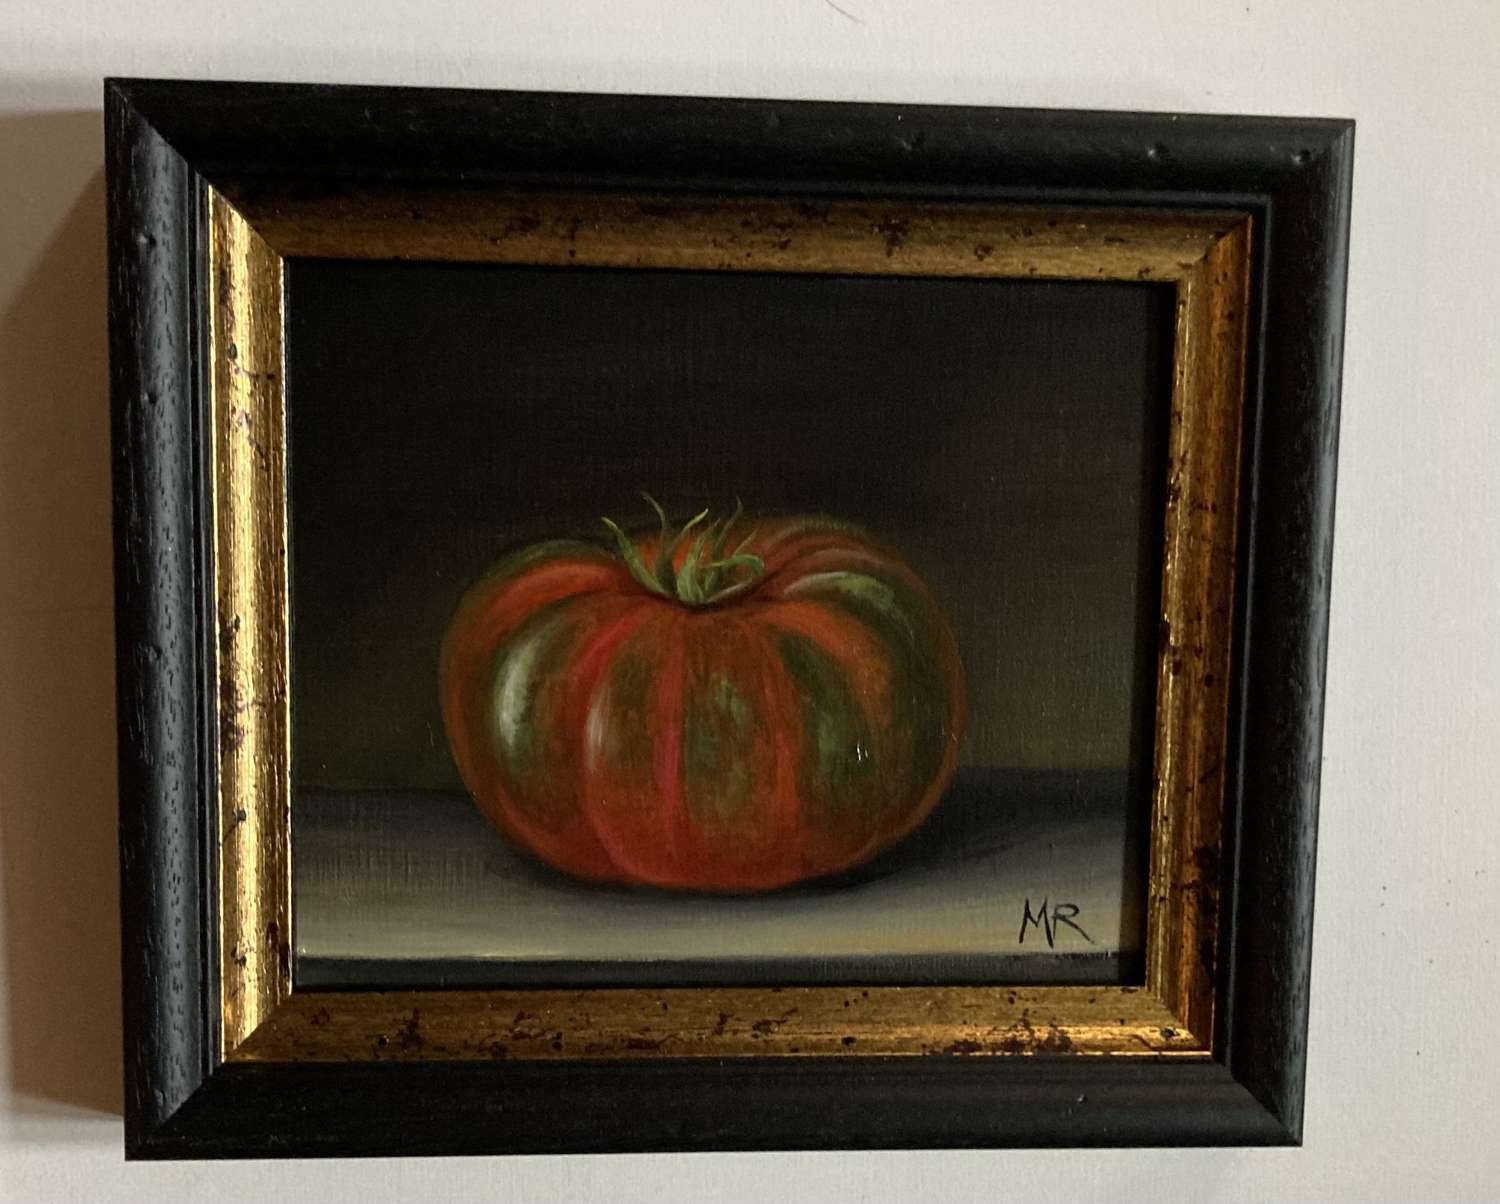 Heritage tomato